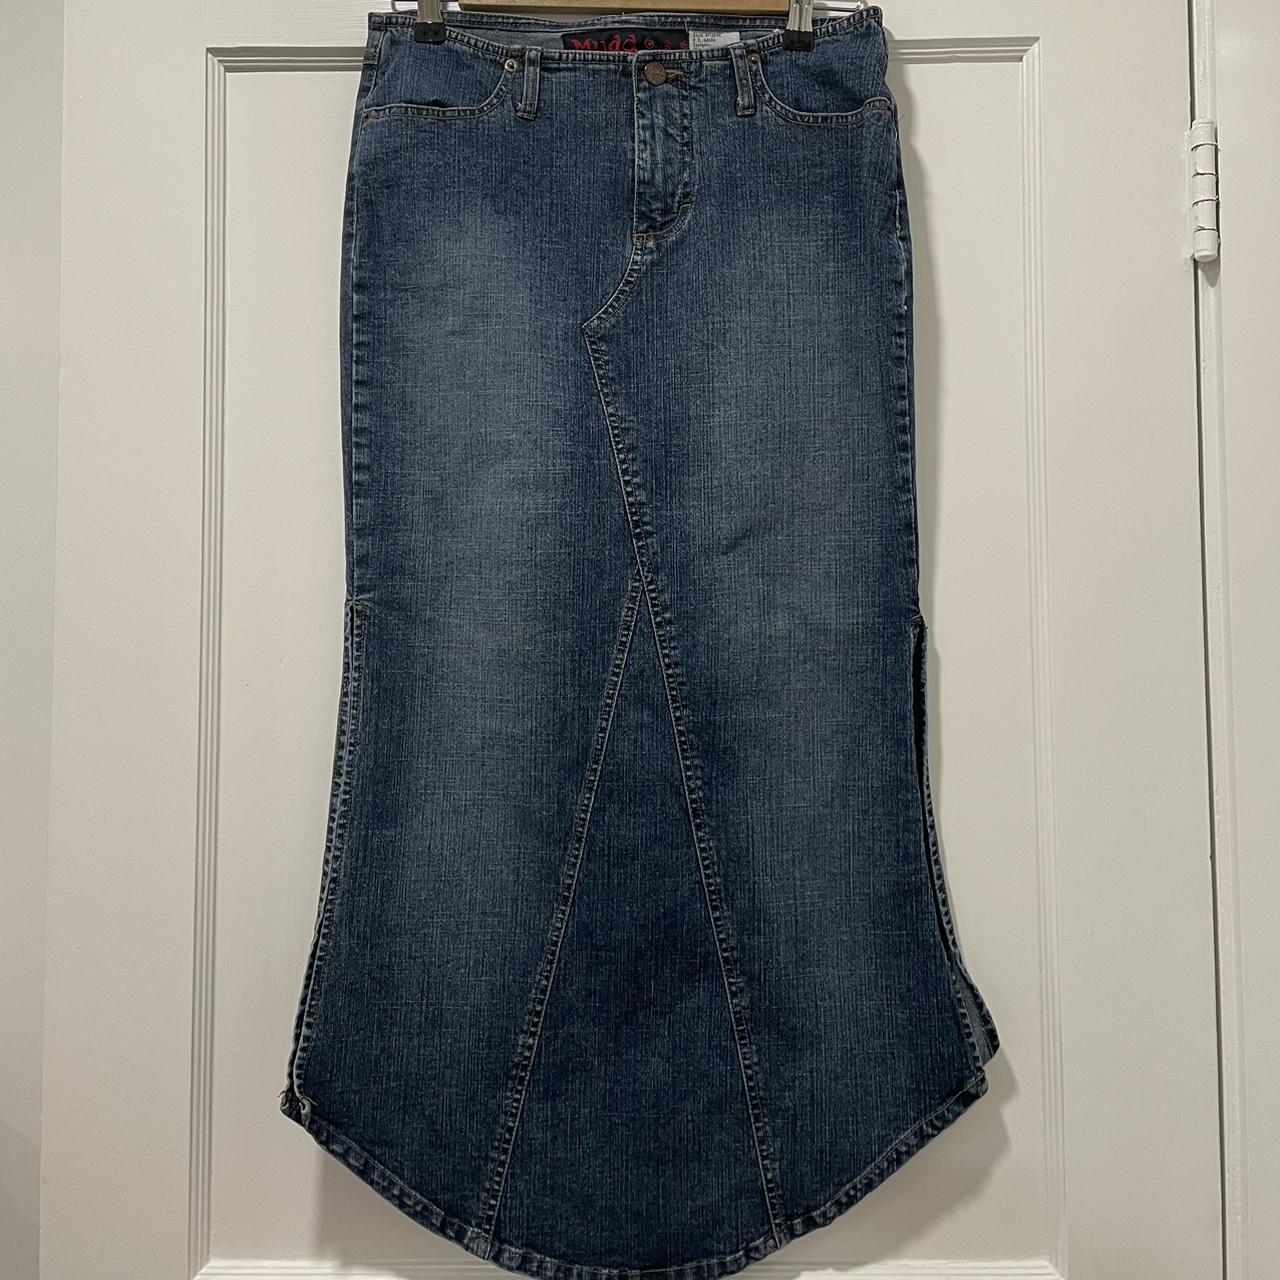 Vintage MUDD Long Dark Jean Skirt with Side... - Depop